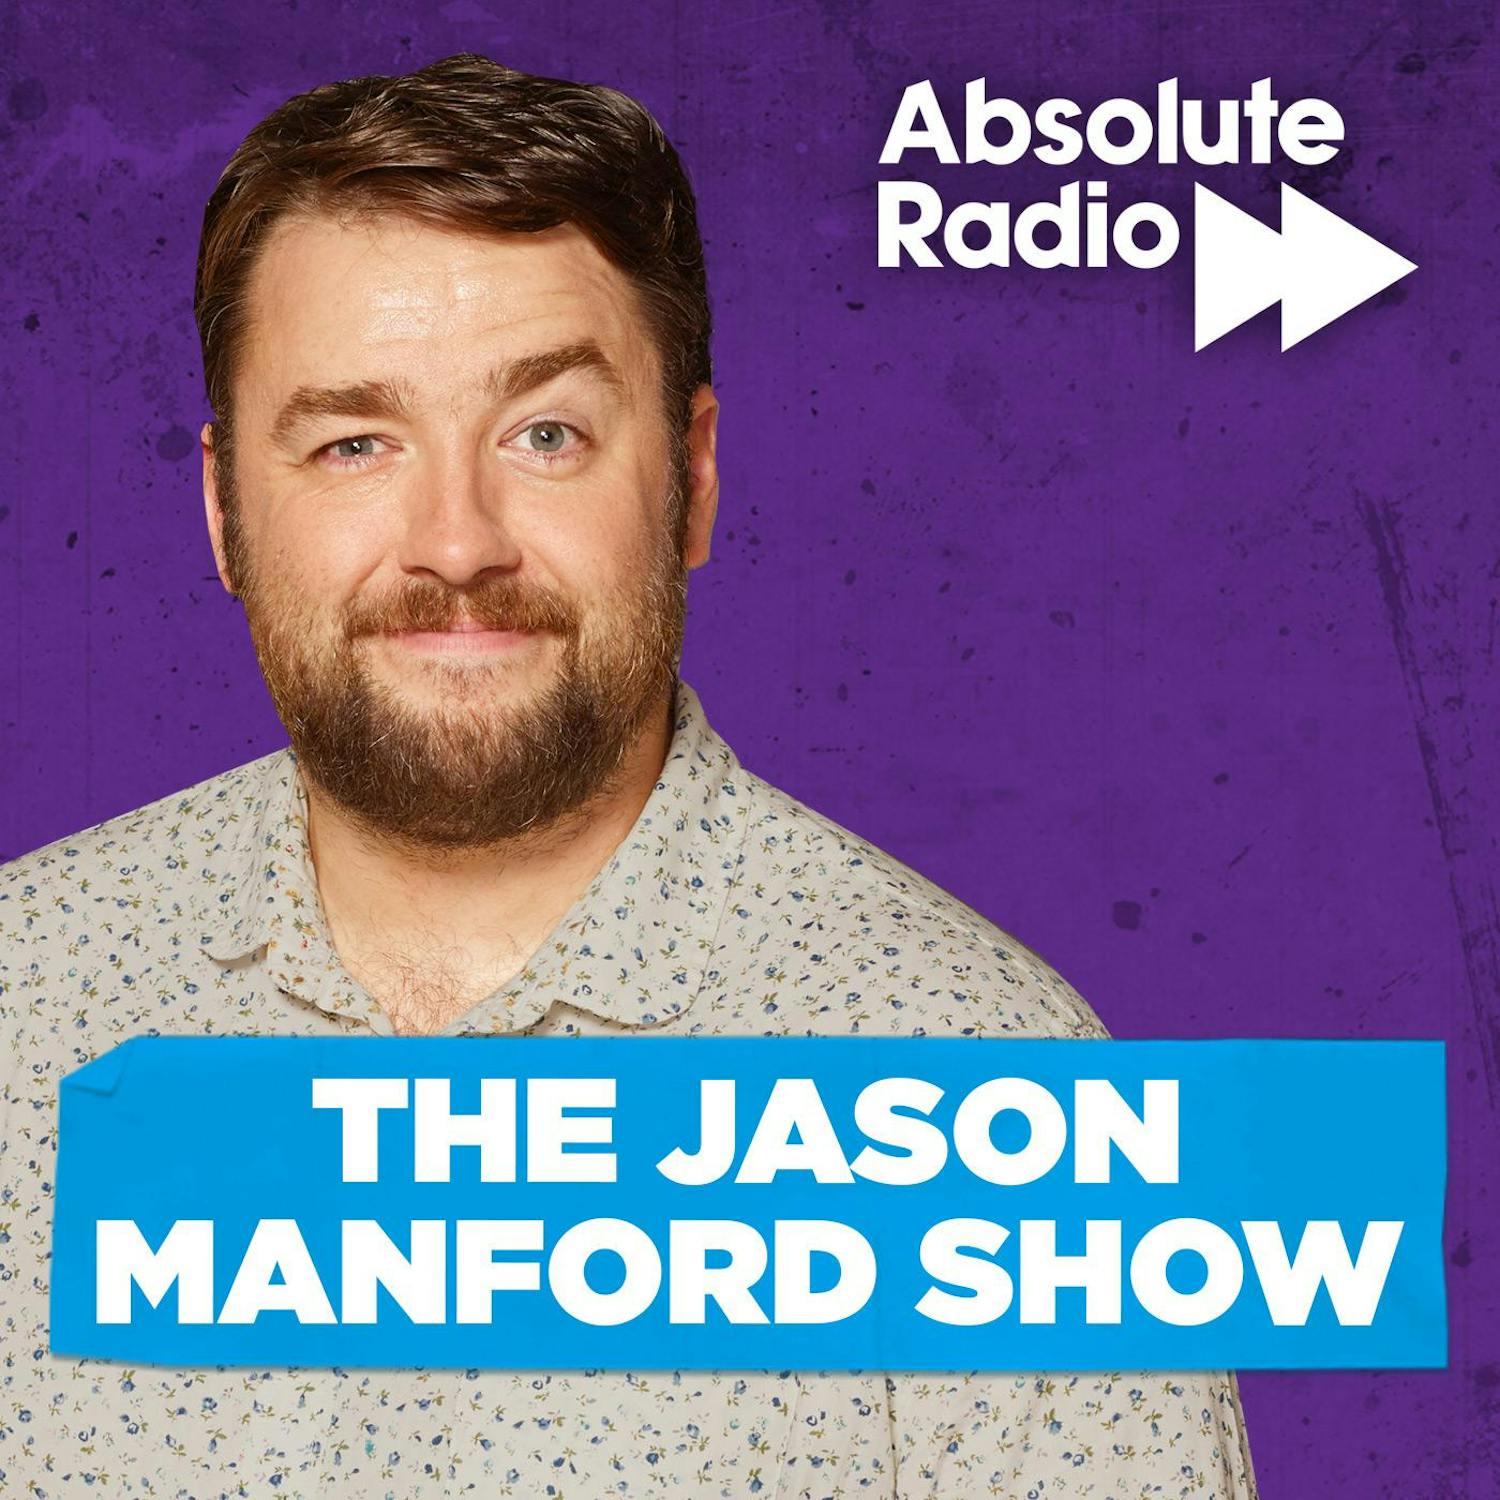 The Jason Manford Show - Steve Edge